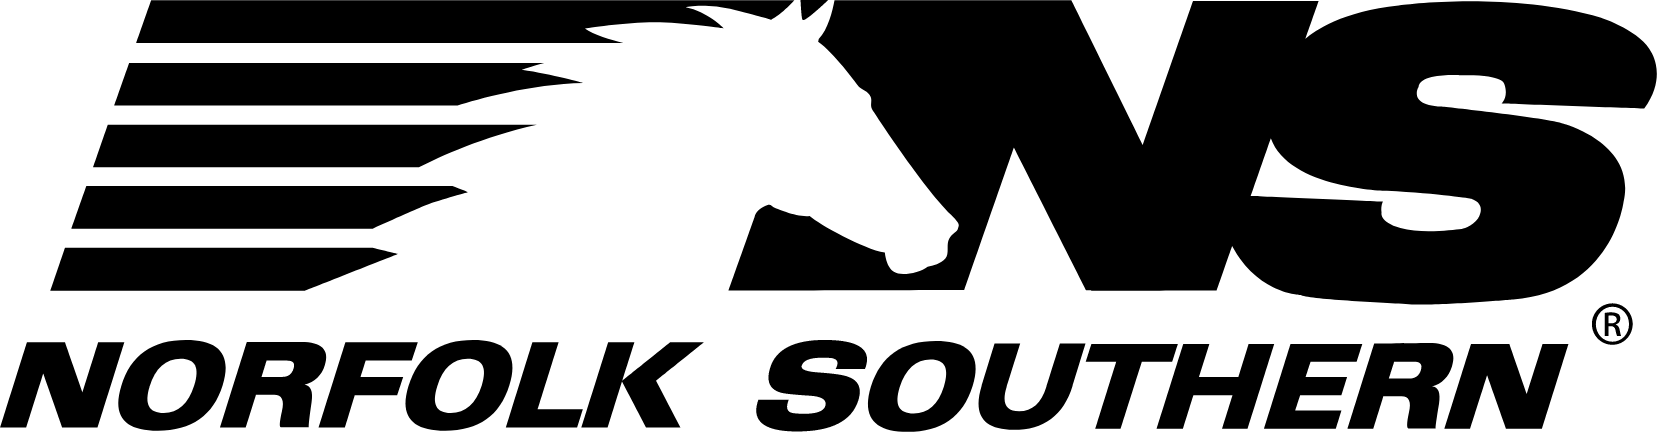 Norfolk Southern logo large (transparent PNG)